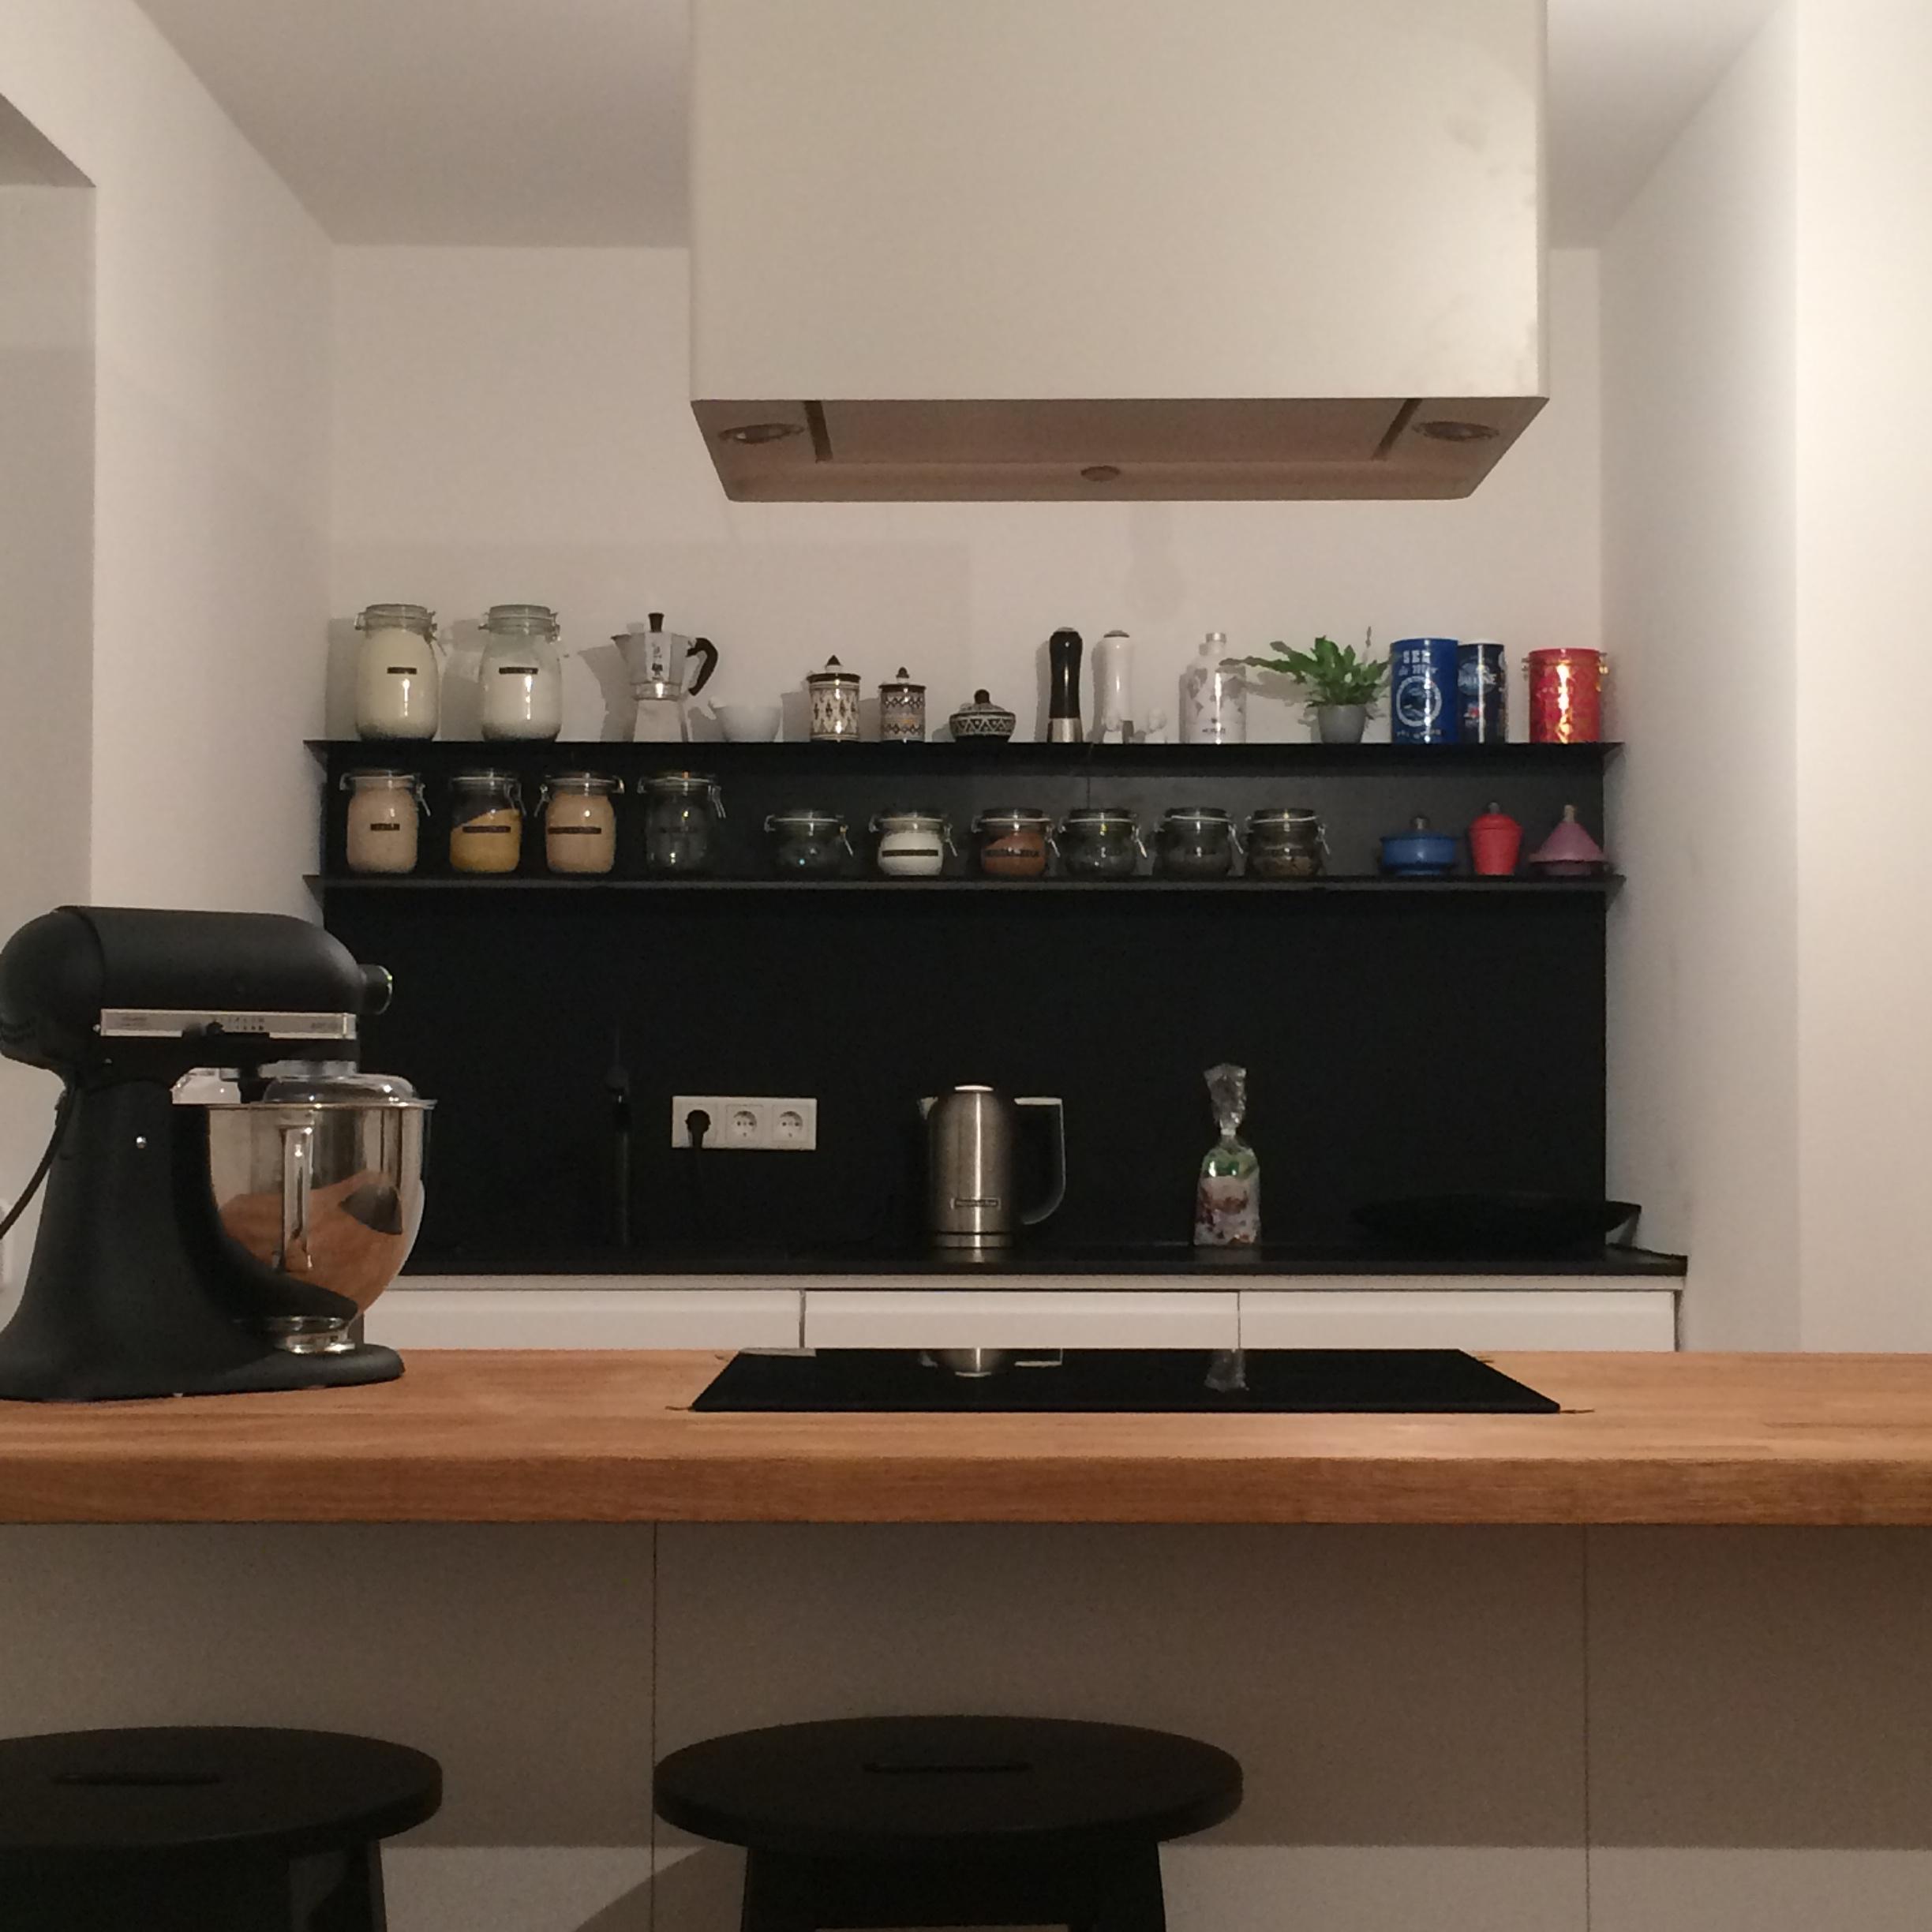 Ikea Küche in b&w mit bunten Accessoires und Massivholz Arbeitsplatte! ❤️ Ein Traum zum Kochen mit Freunden #küche